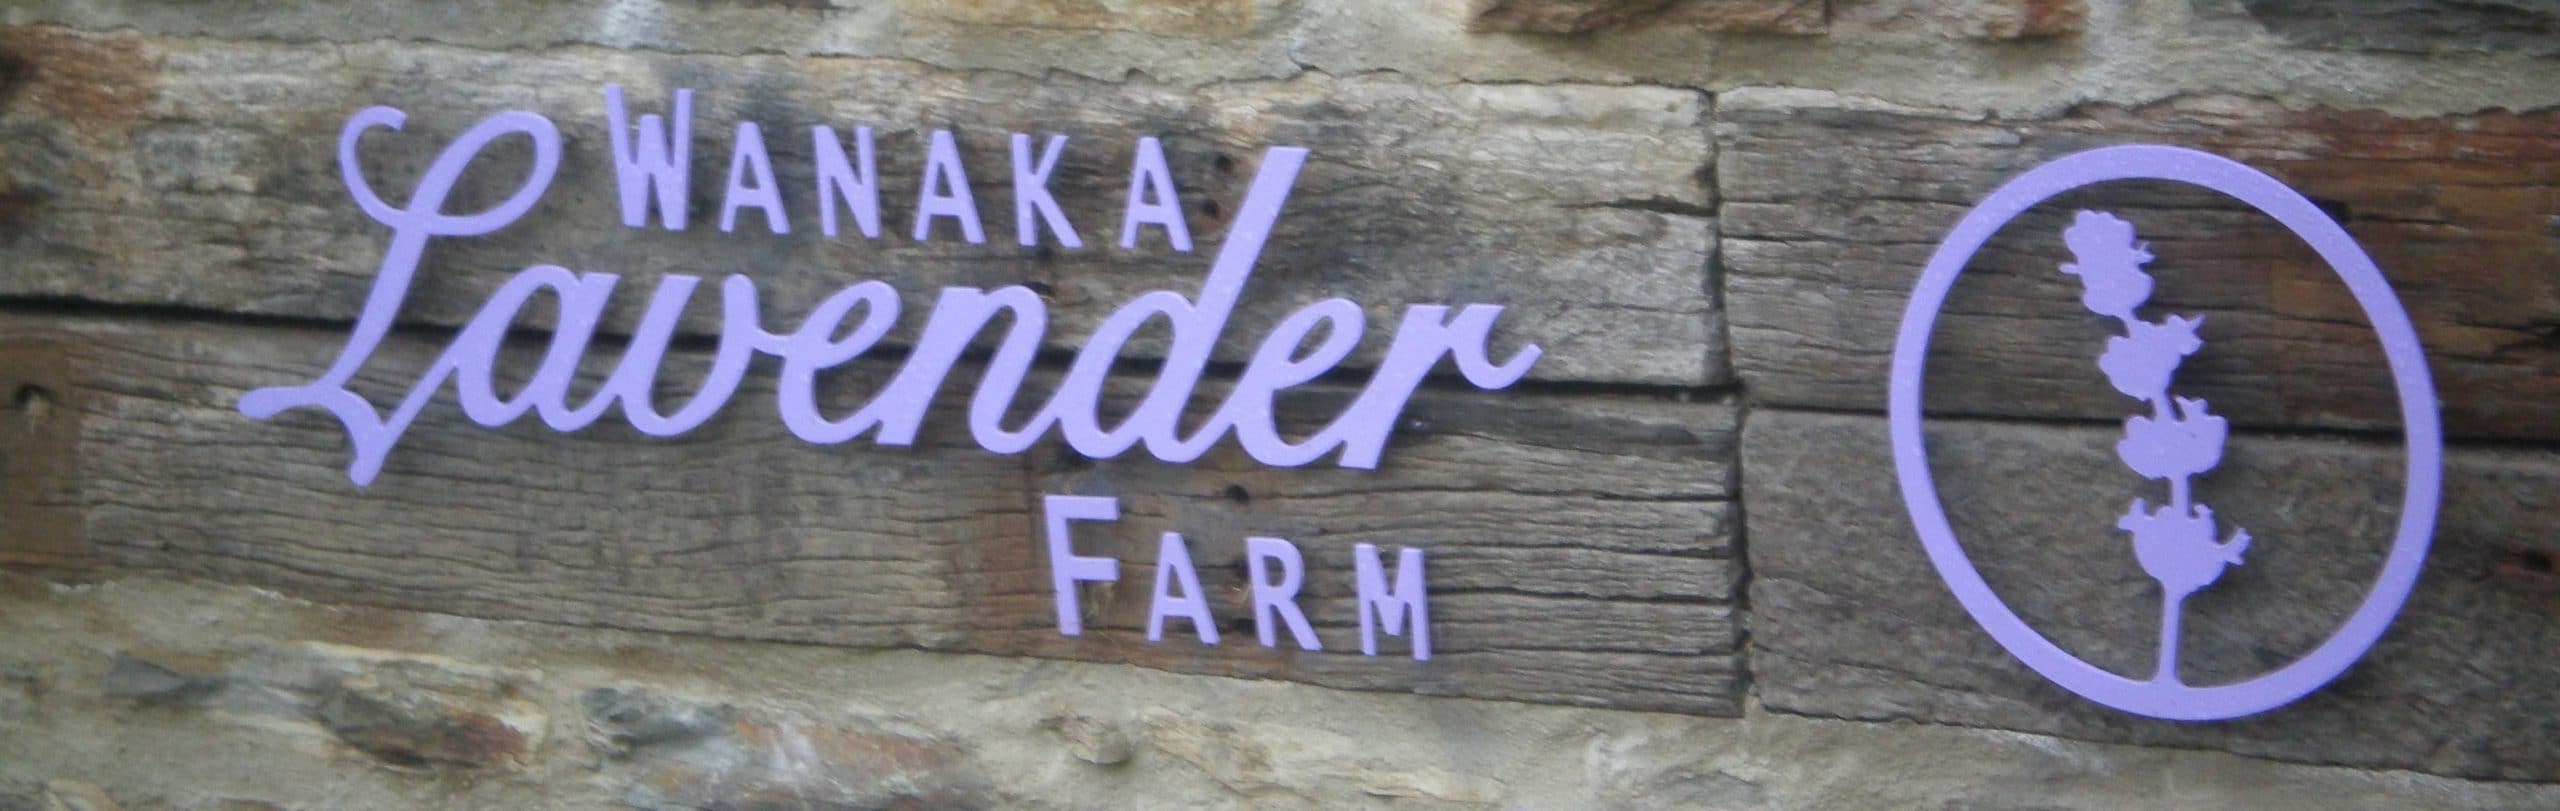 wanaka lavender farm sign